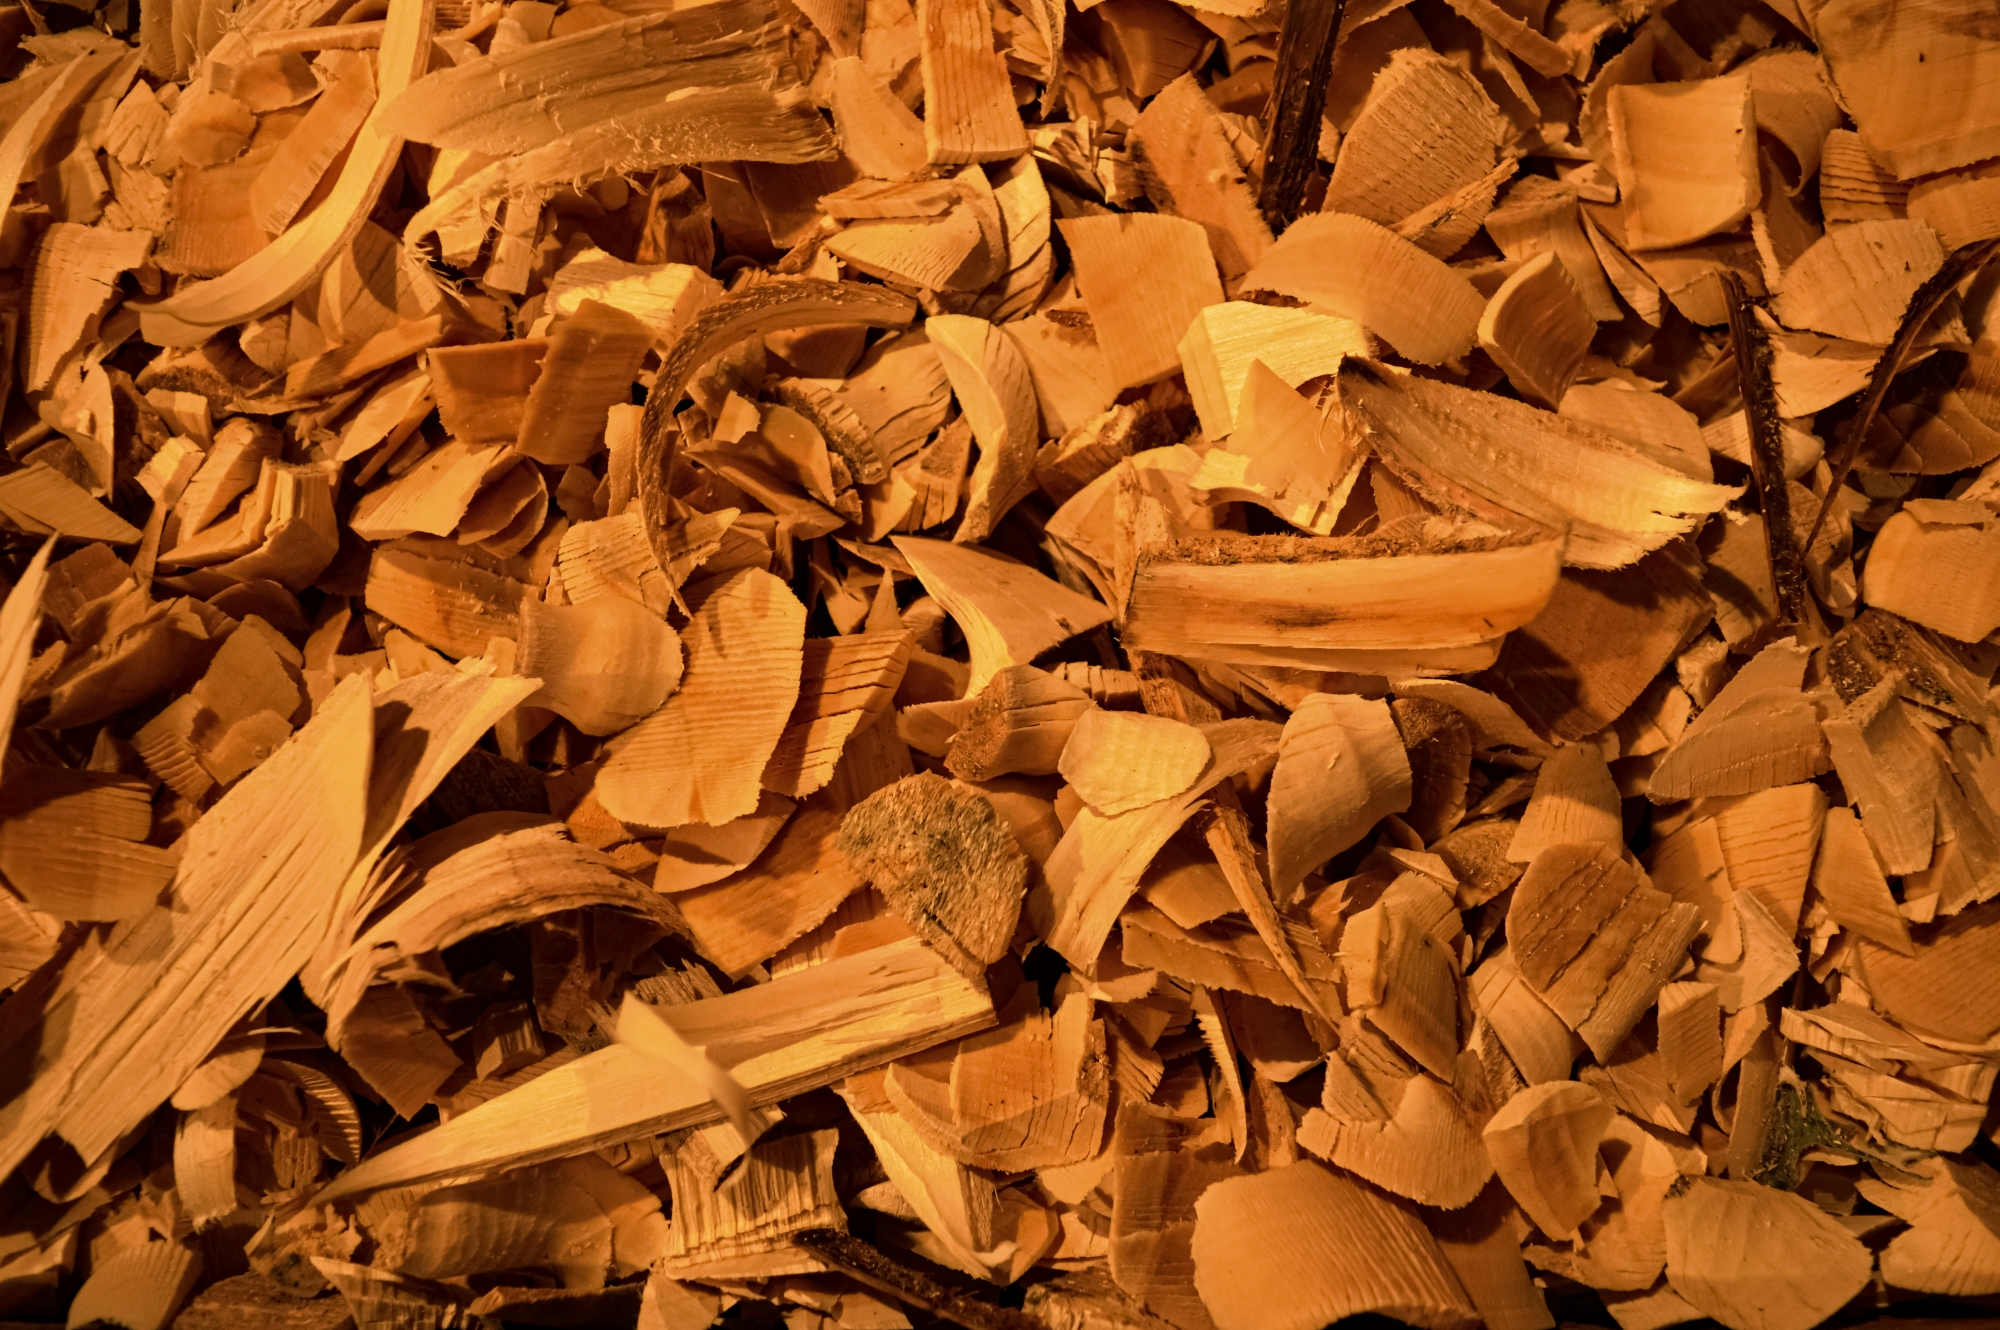 découvrez les secrets et les vertus du bois de cèdre avec notre collection de produits inspirés par la nature et la tradition.